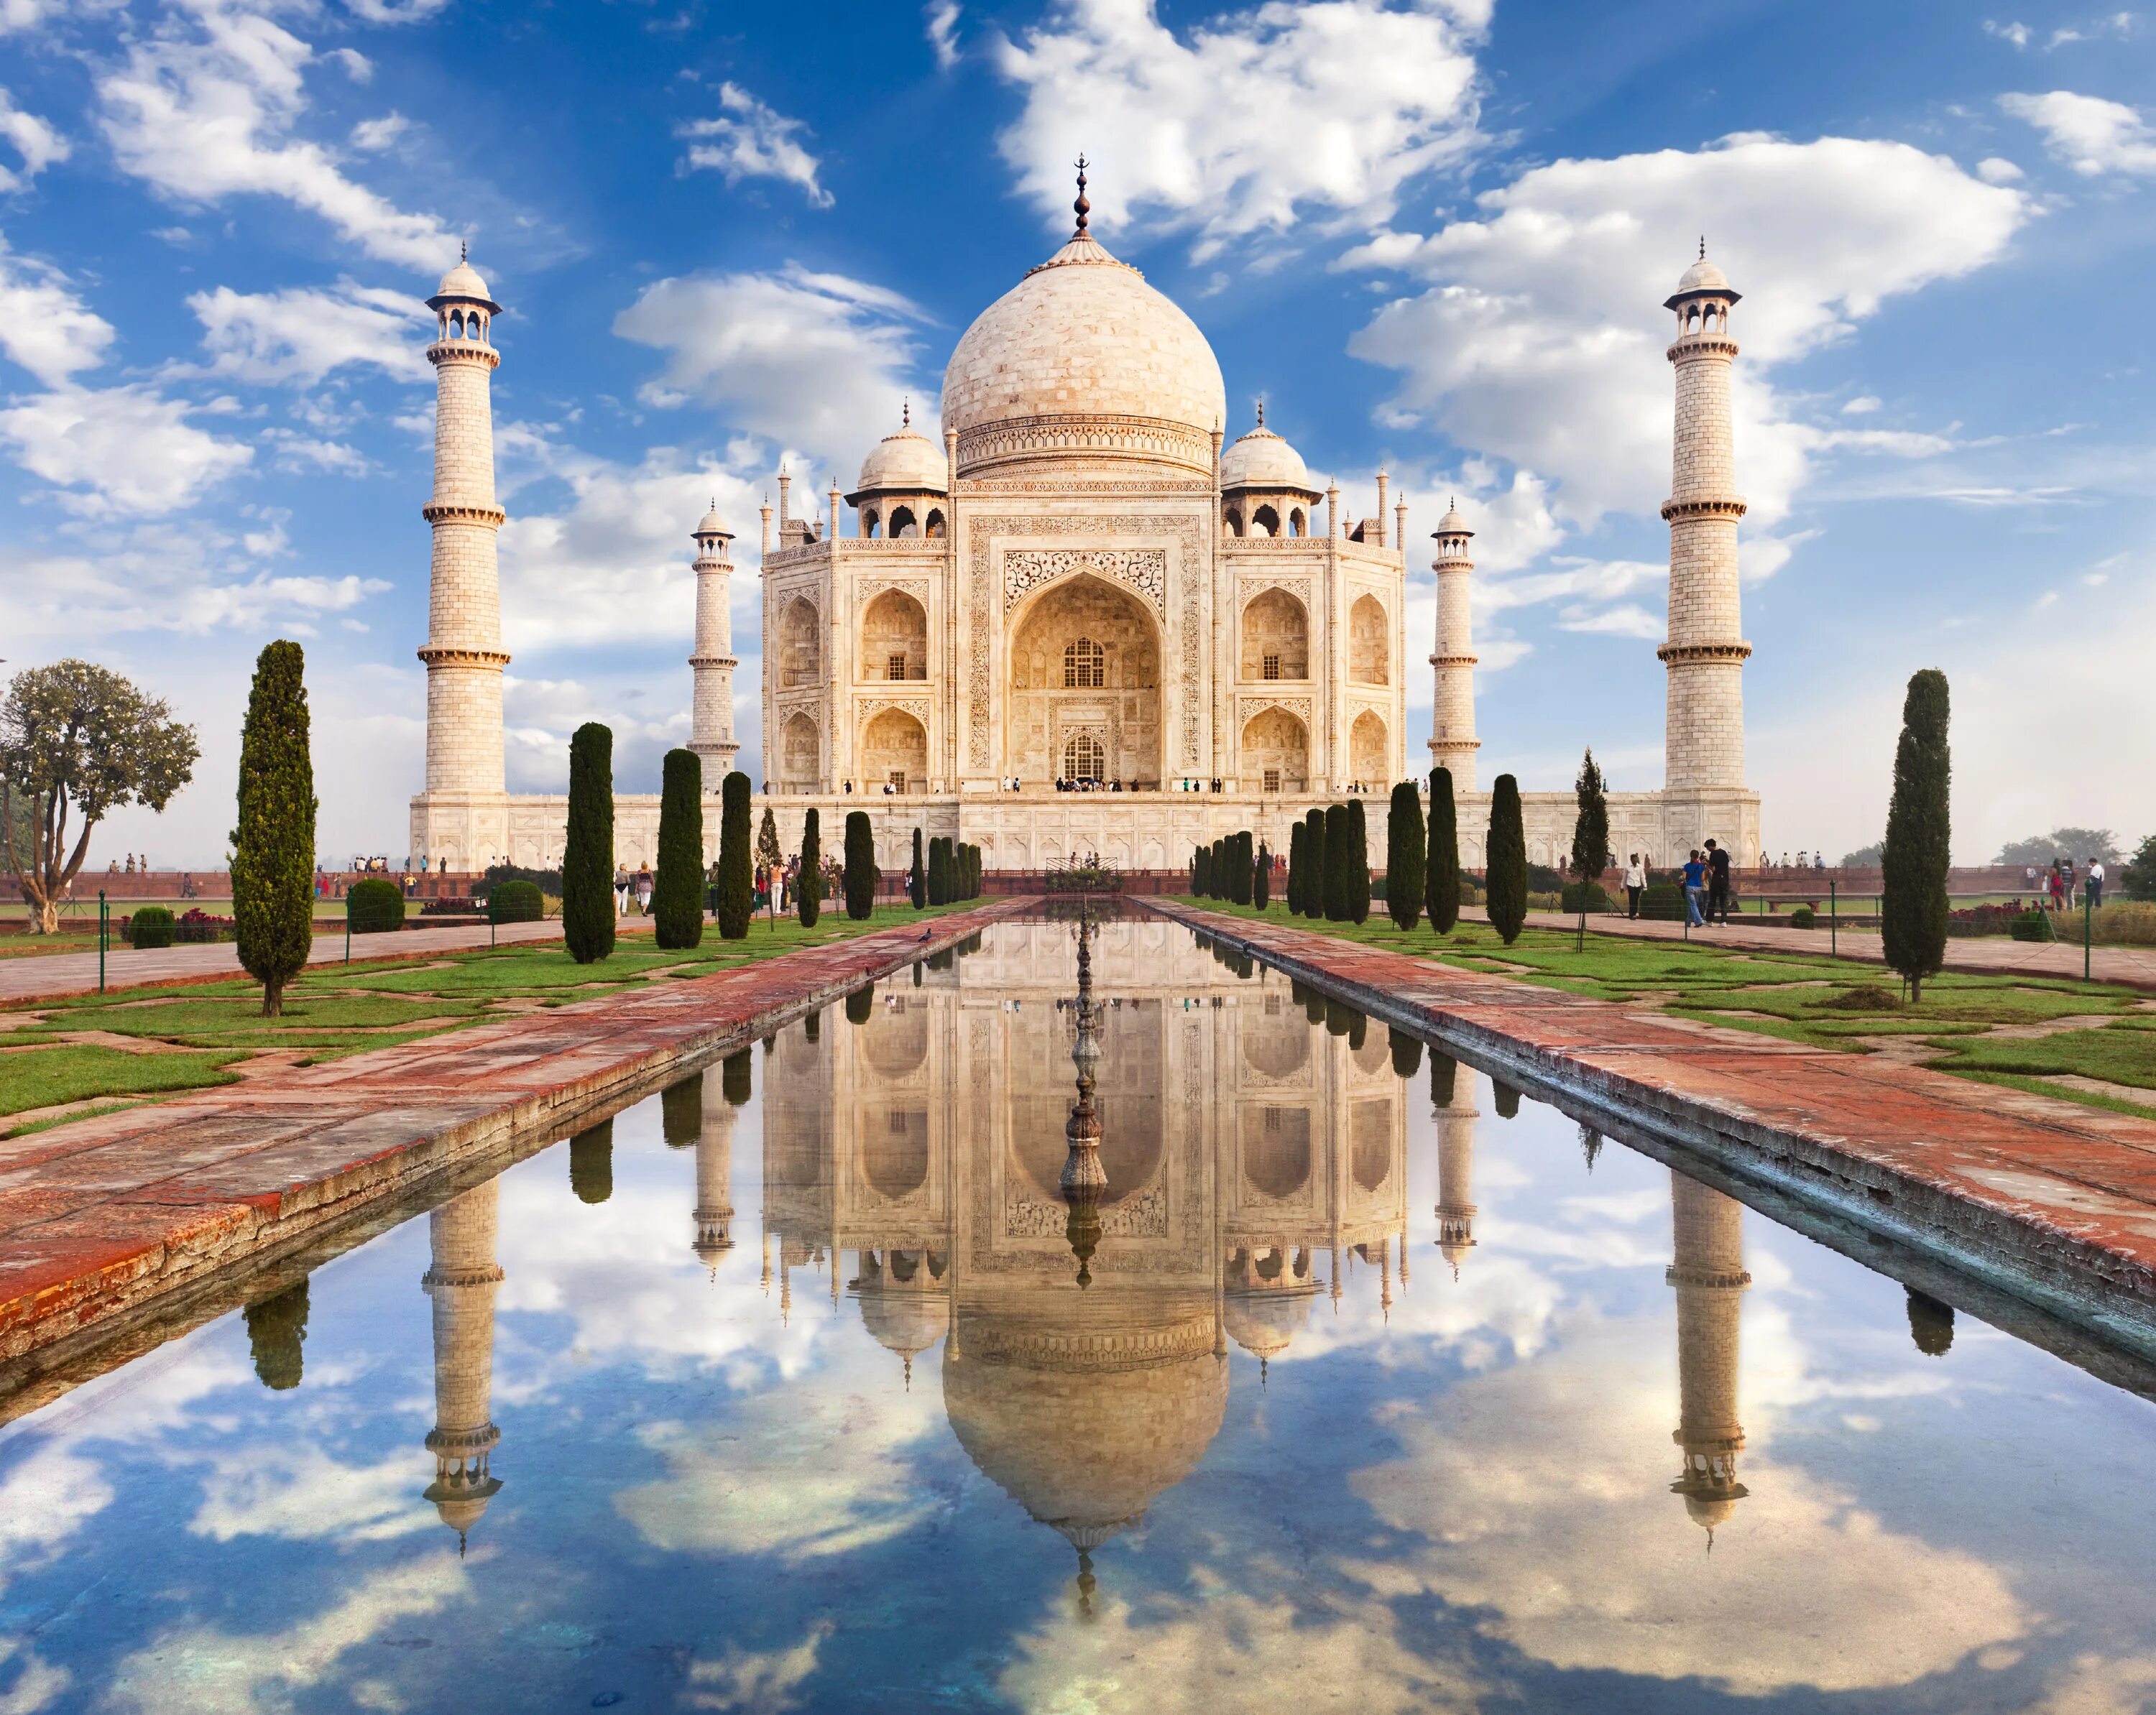 На фотографиях изображены крупнейшие города стран. Мавзолей Тадж-Махал в Индии. Дворец в Индии Тадж Махал. Мечеть в Индии Тадж Махал. Тадж-Махал (Индия)Тадж-Махал (Индия).